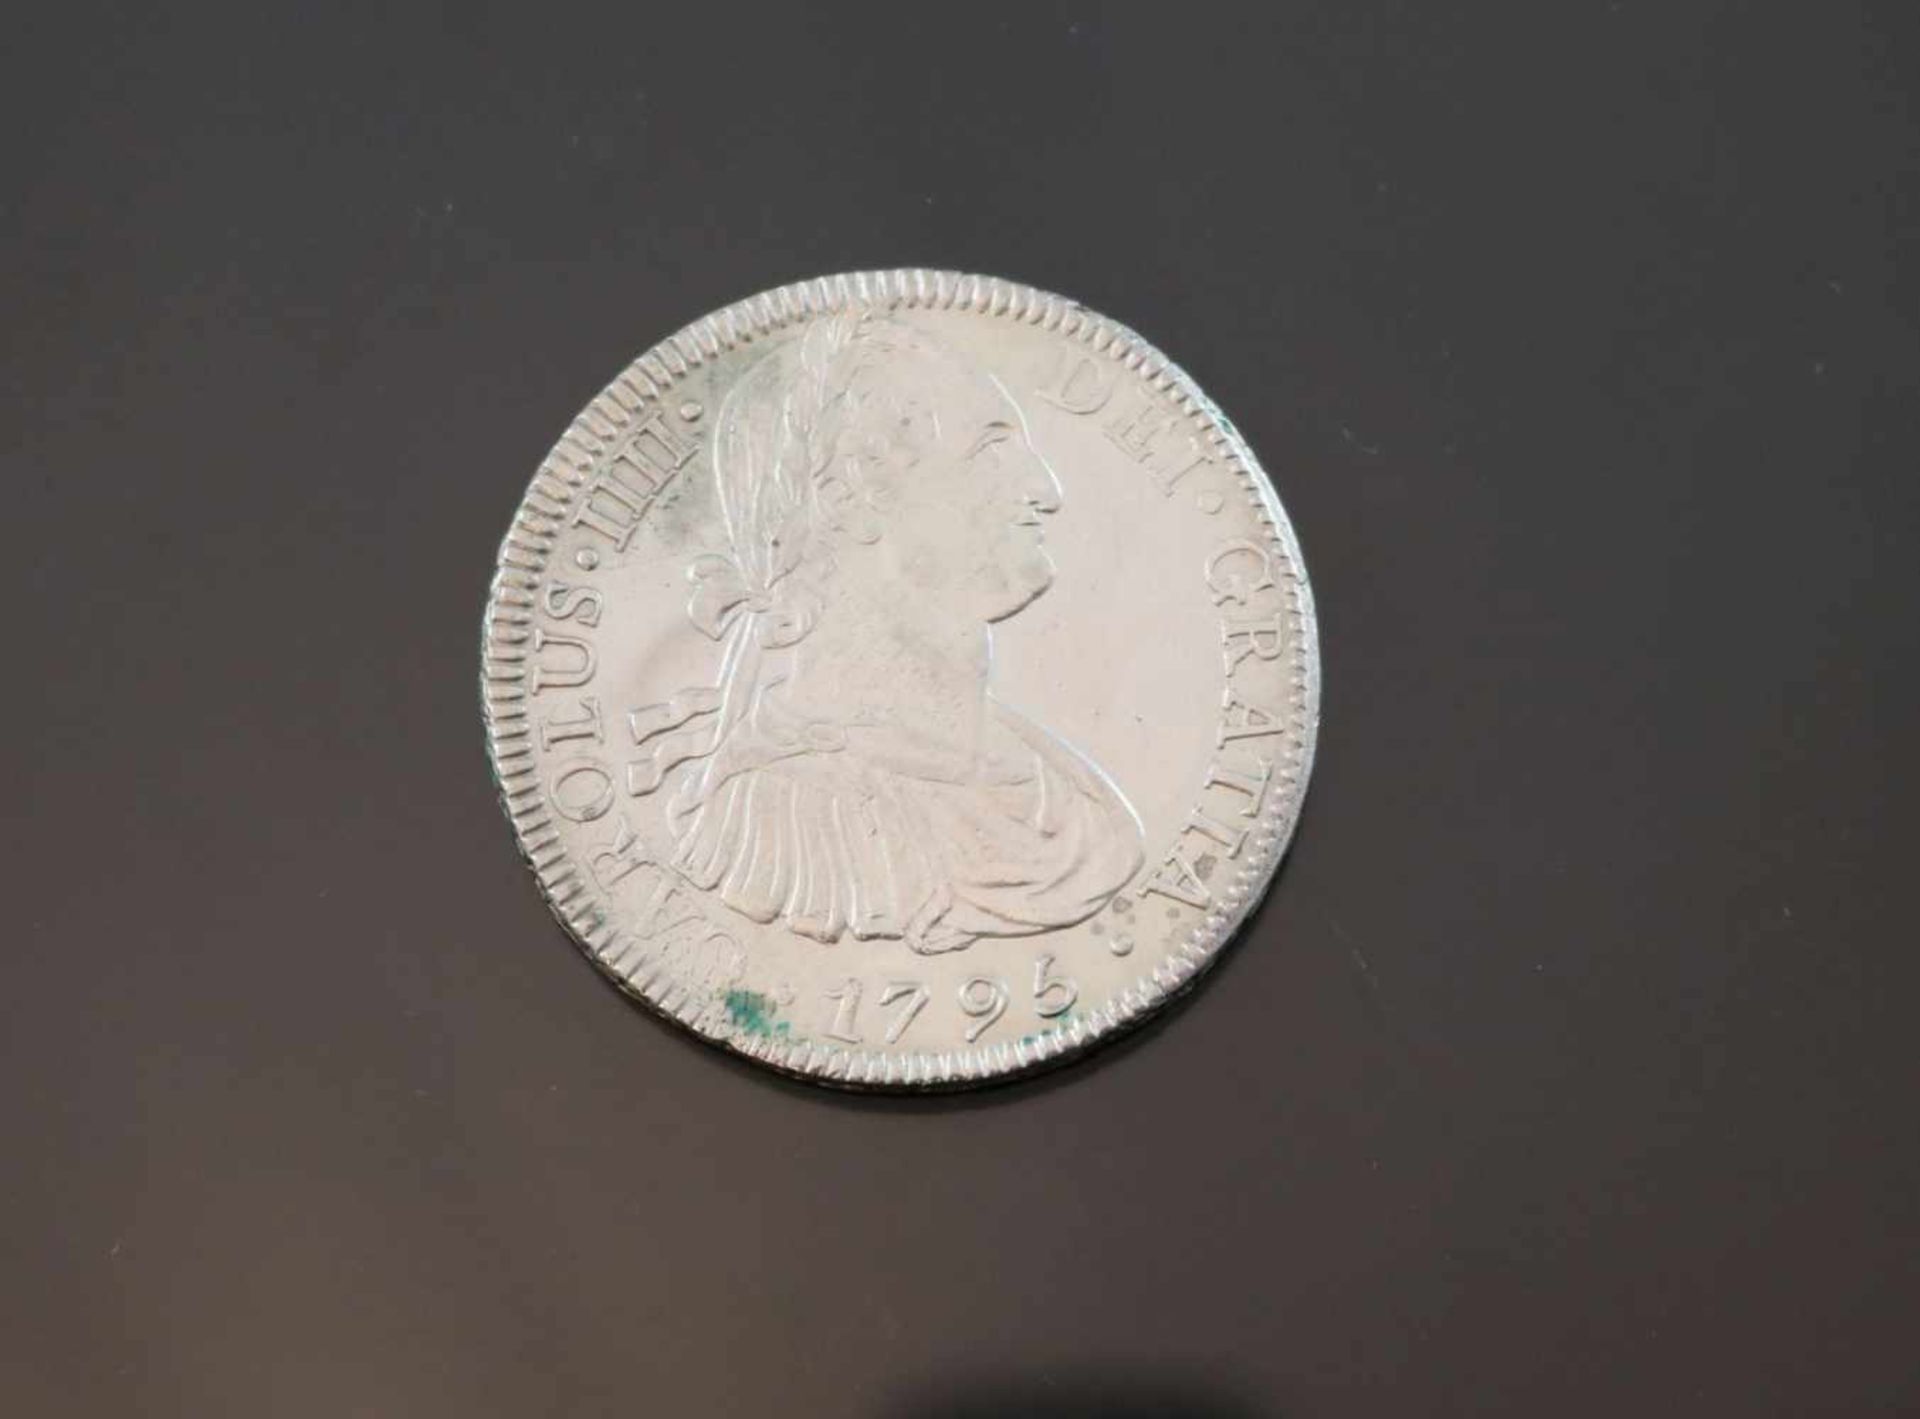 8 Reales 1795 Mexico Charles IIIIGewicht: 26,8 Gramm Größe: 39,66 mm Zustand: f-fz- - -25.00 % - Bild 2 aus 2